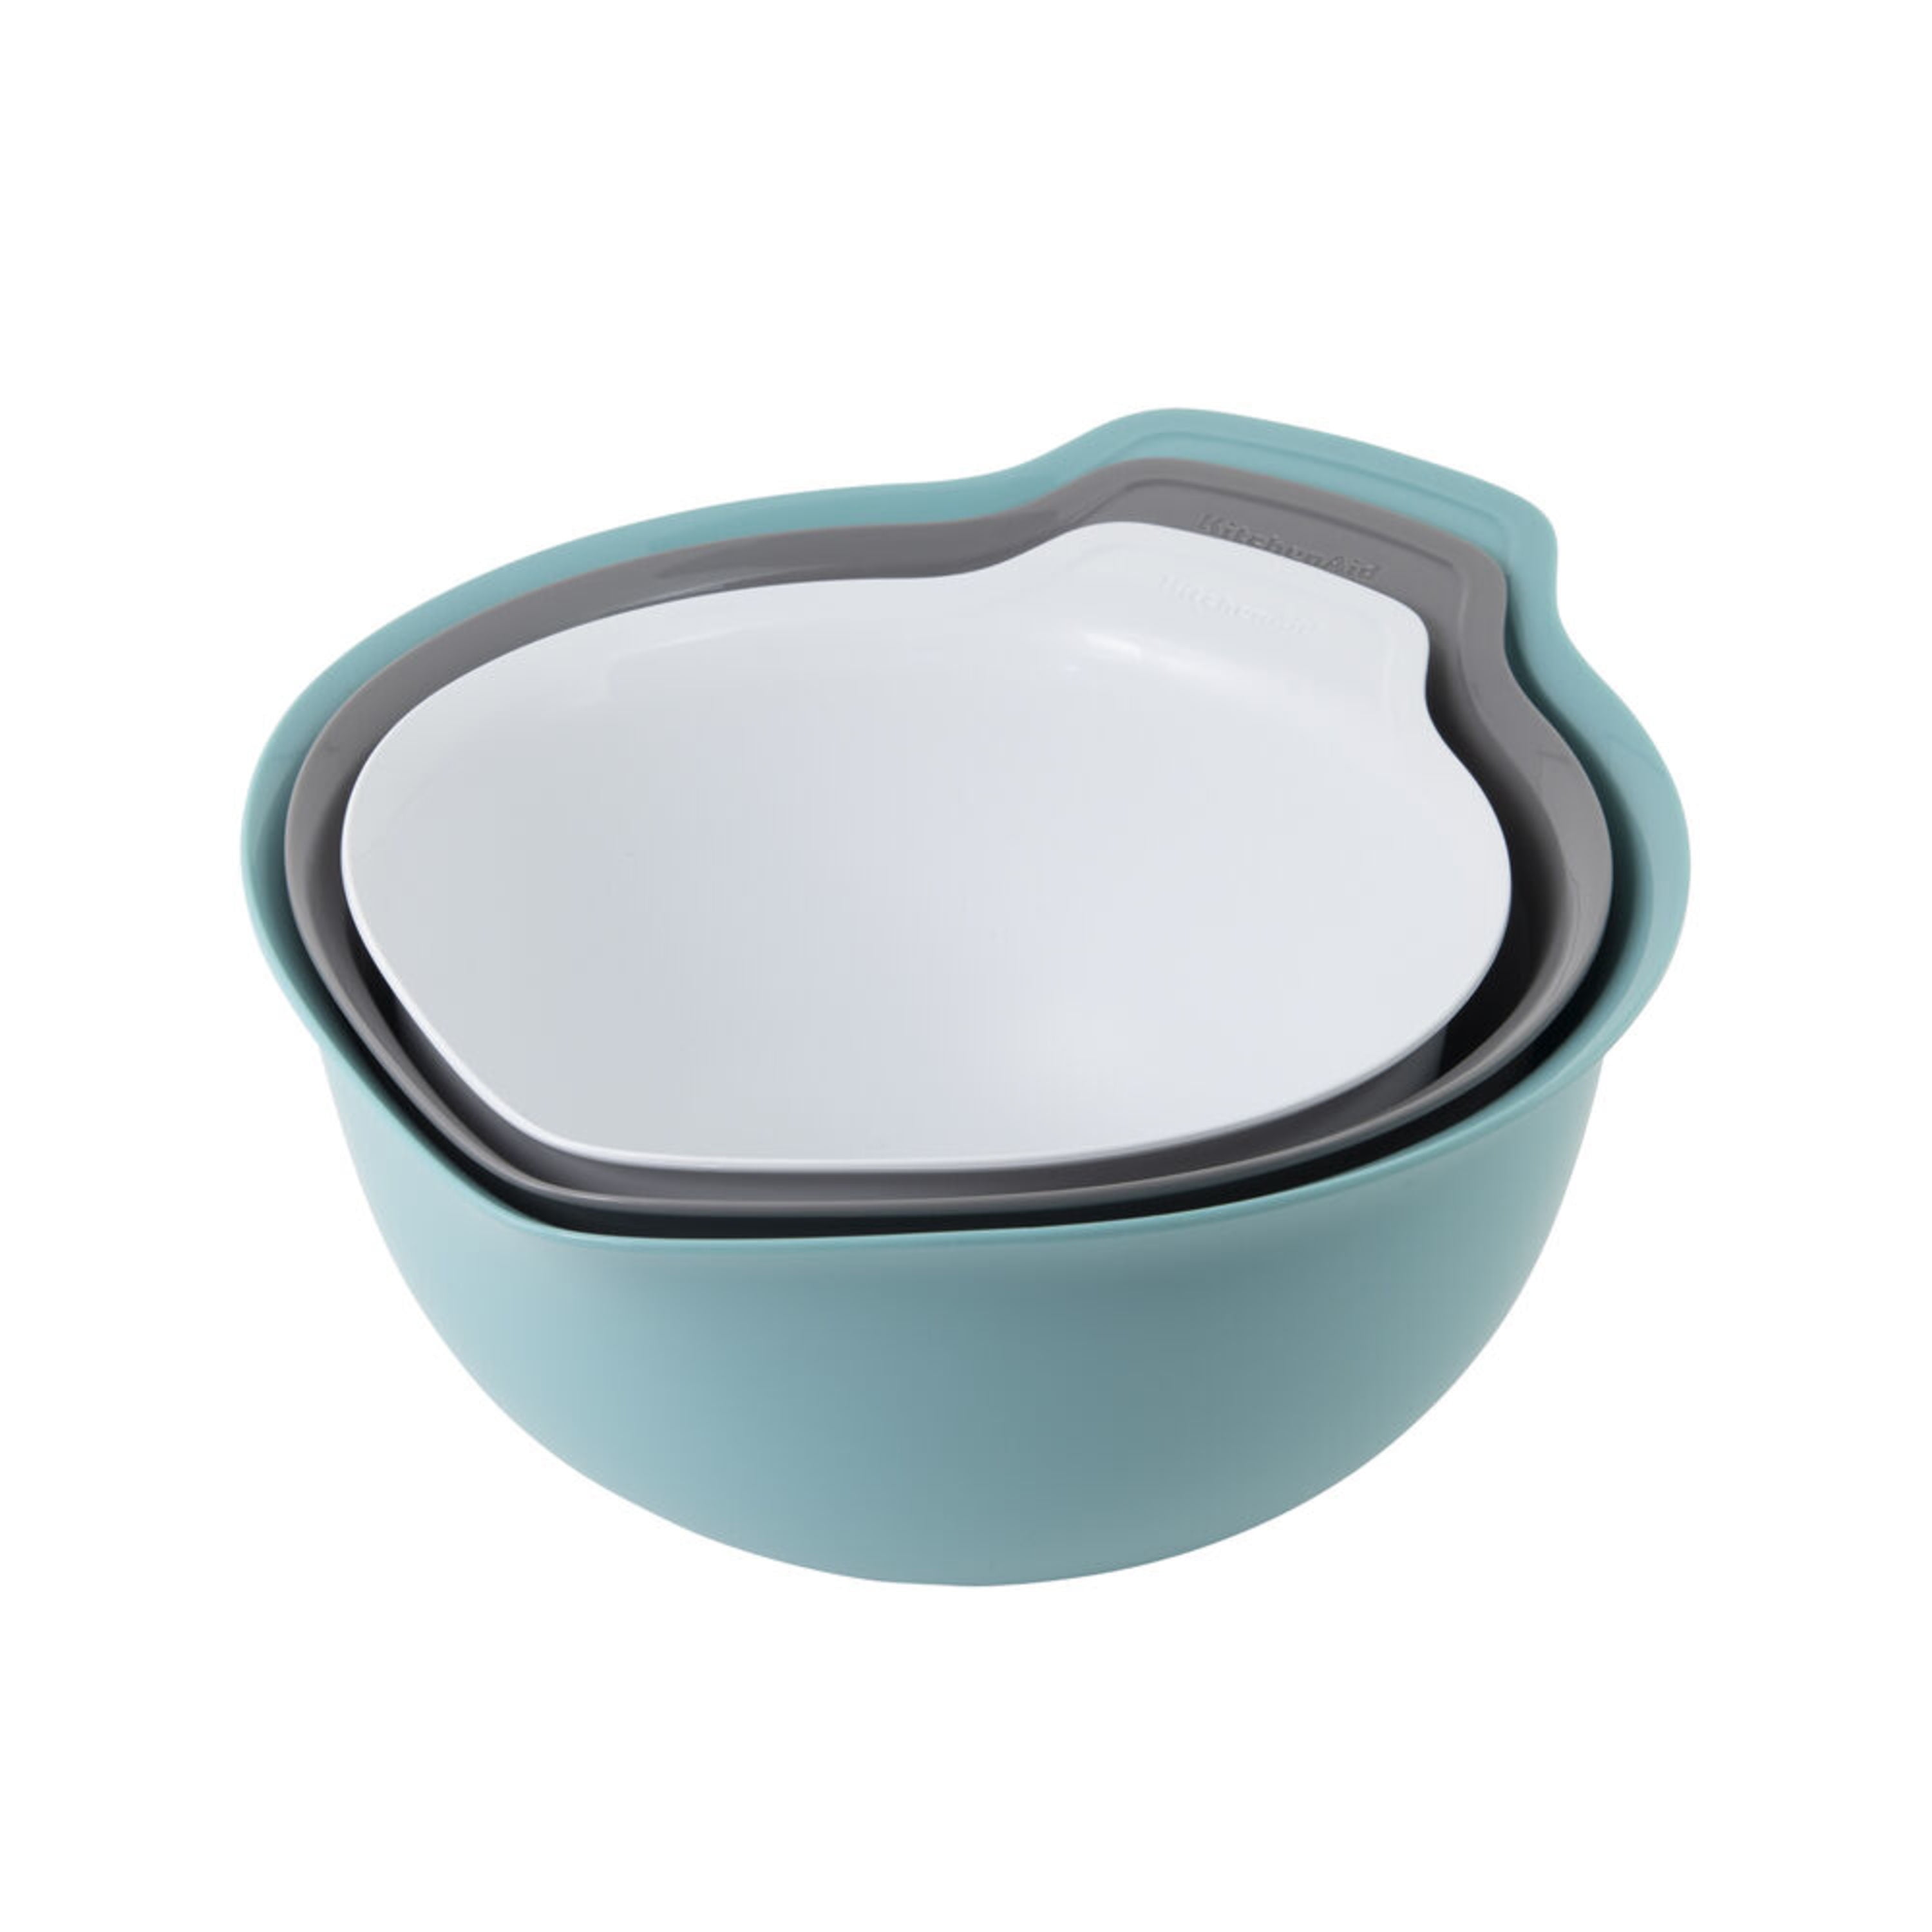  KitchenAid Classic Mixing Bowls, Set of 5, Aqua Sky 2: Home &  Kitchen